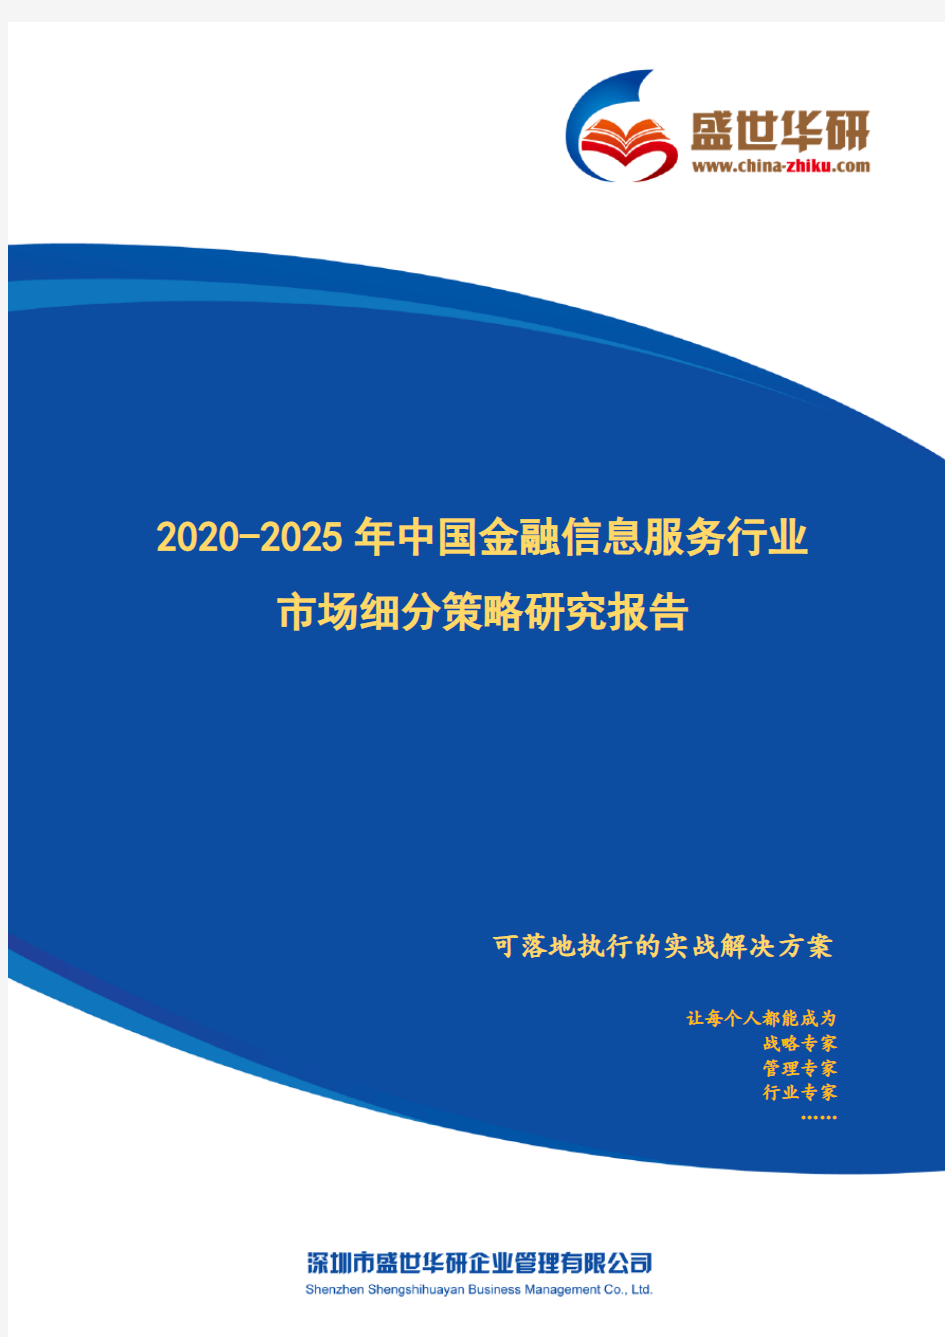 【完整版】2020-2025年中国金融信息服务行业市场细分策略研究报告